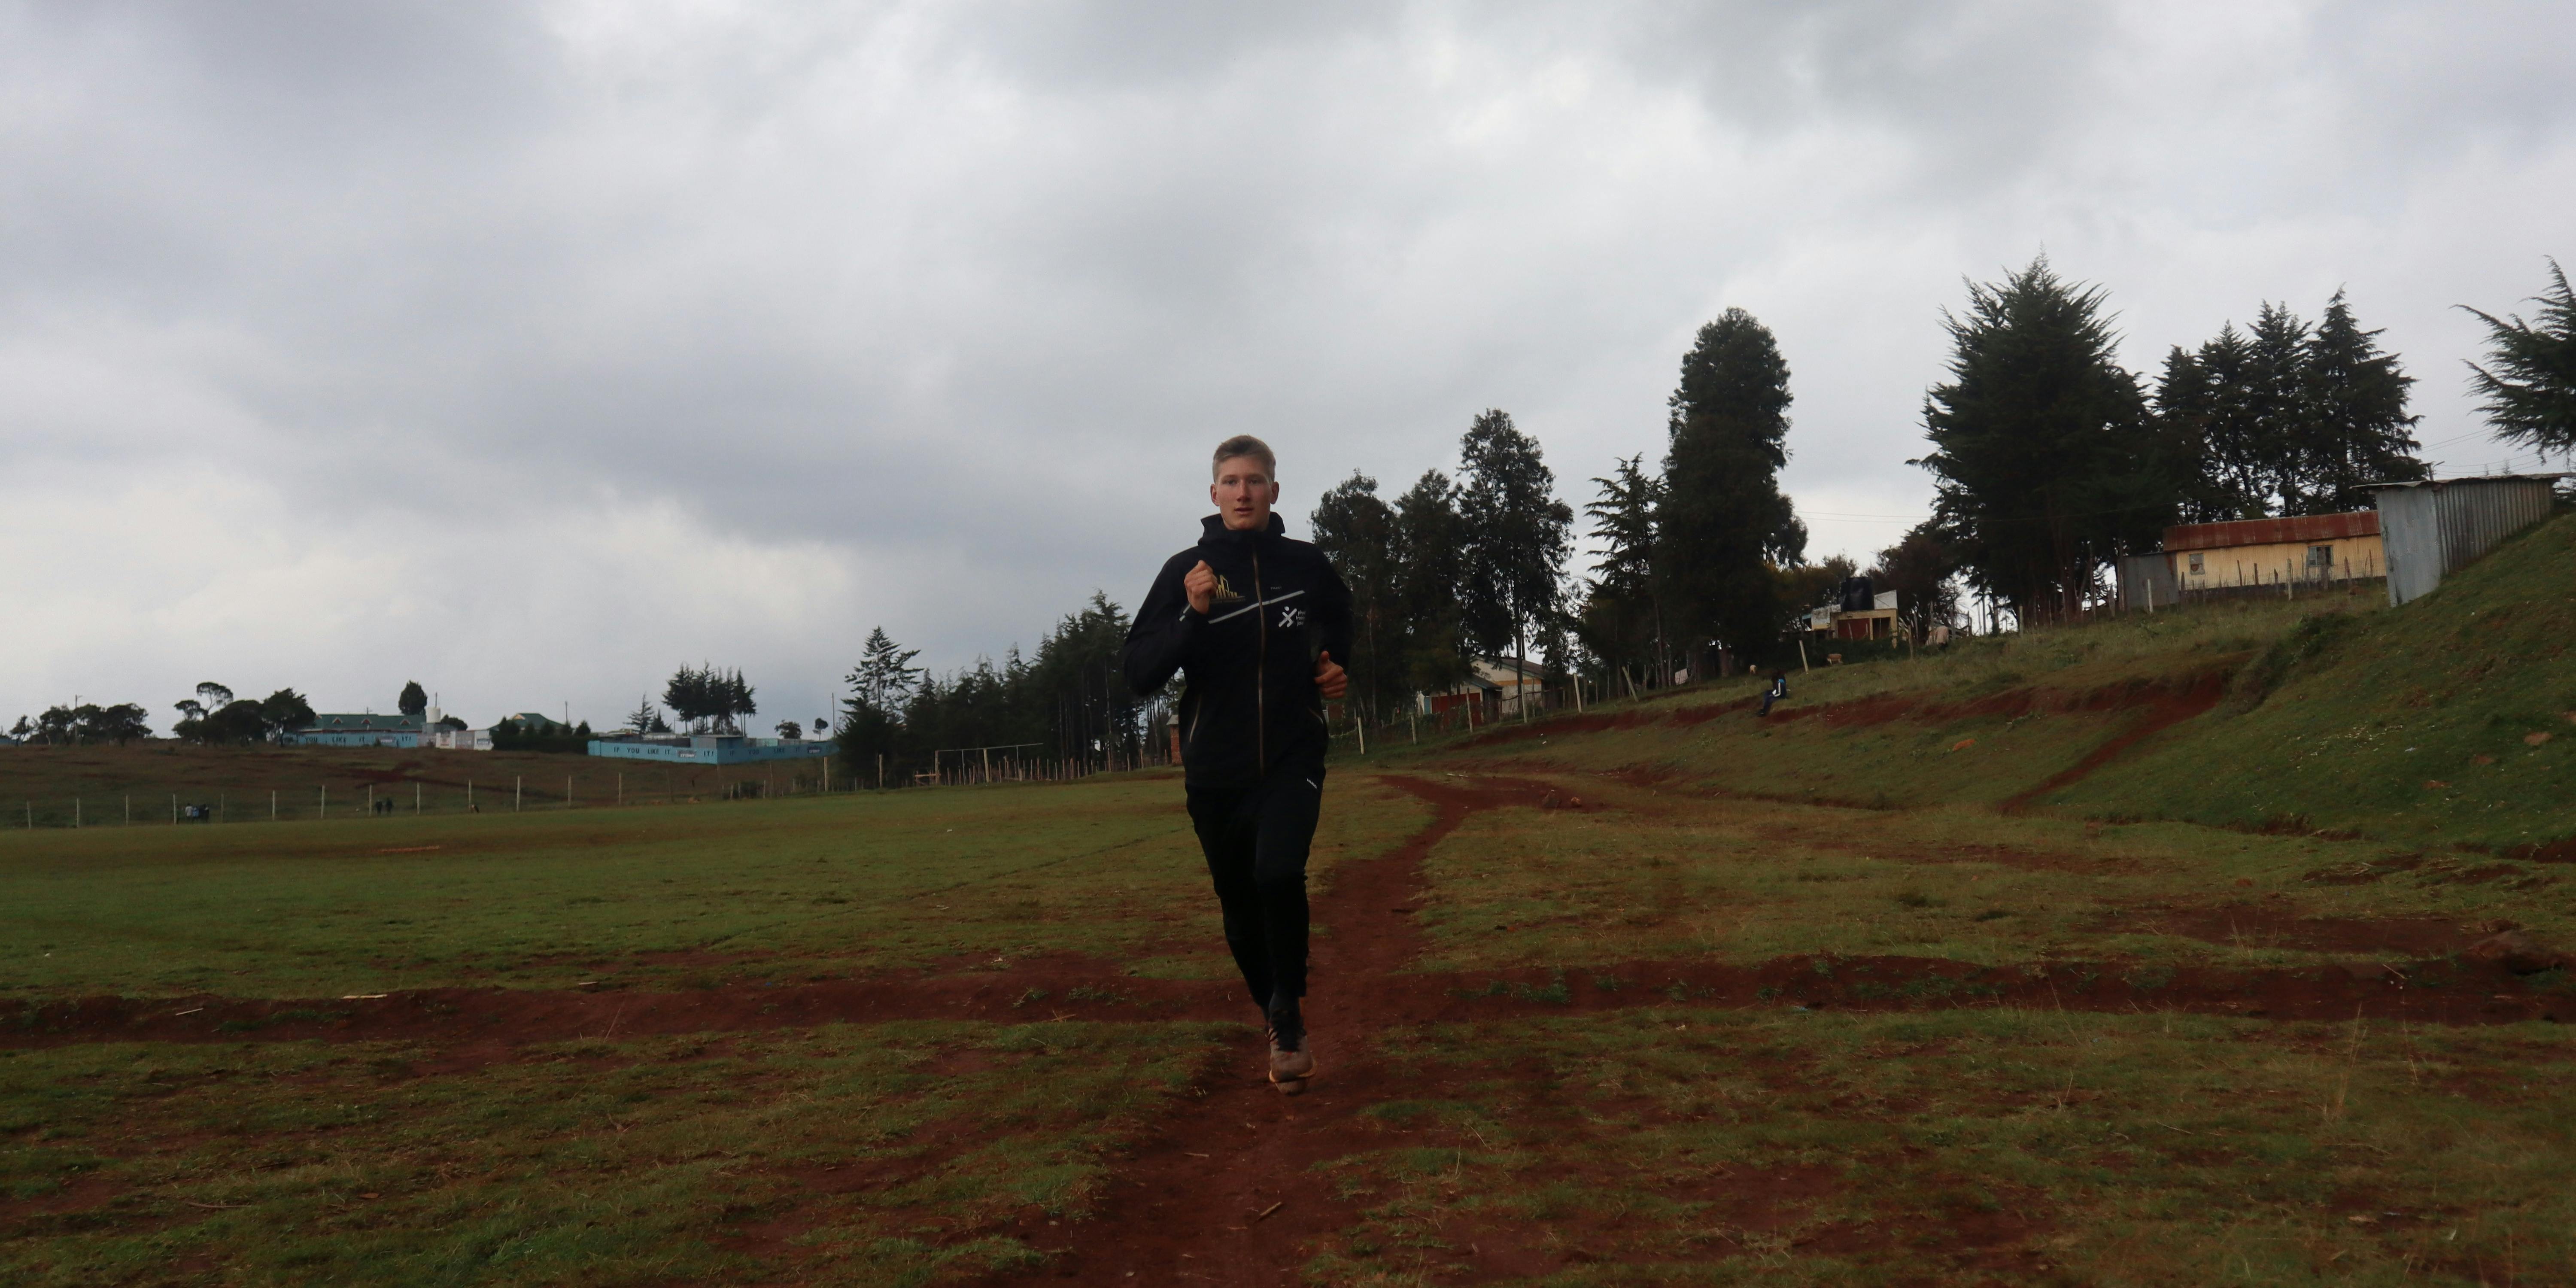 3.000 χιλιόμετρα προετοιμασίας σε έξι μήνες στις διαδρομές της Κένυας - Οι σκέψεις ενός αθλητή πριν την αγωνιστική σεζόν